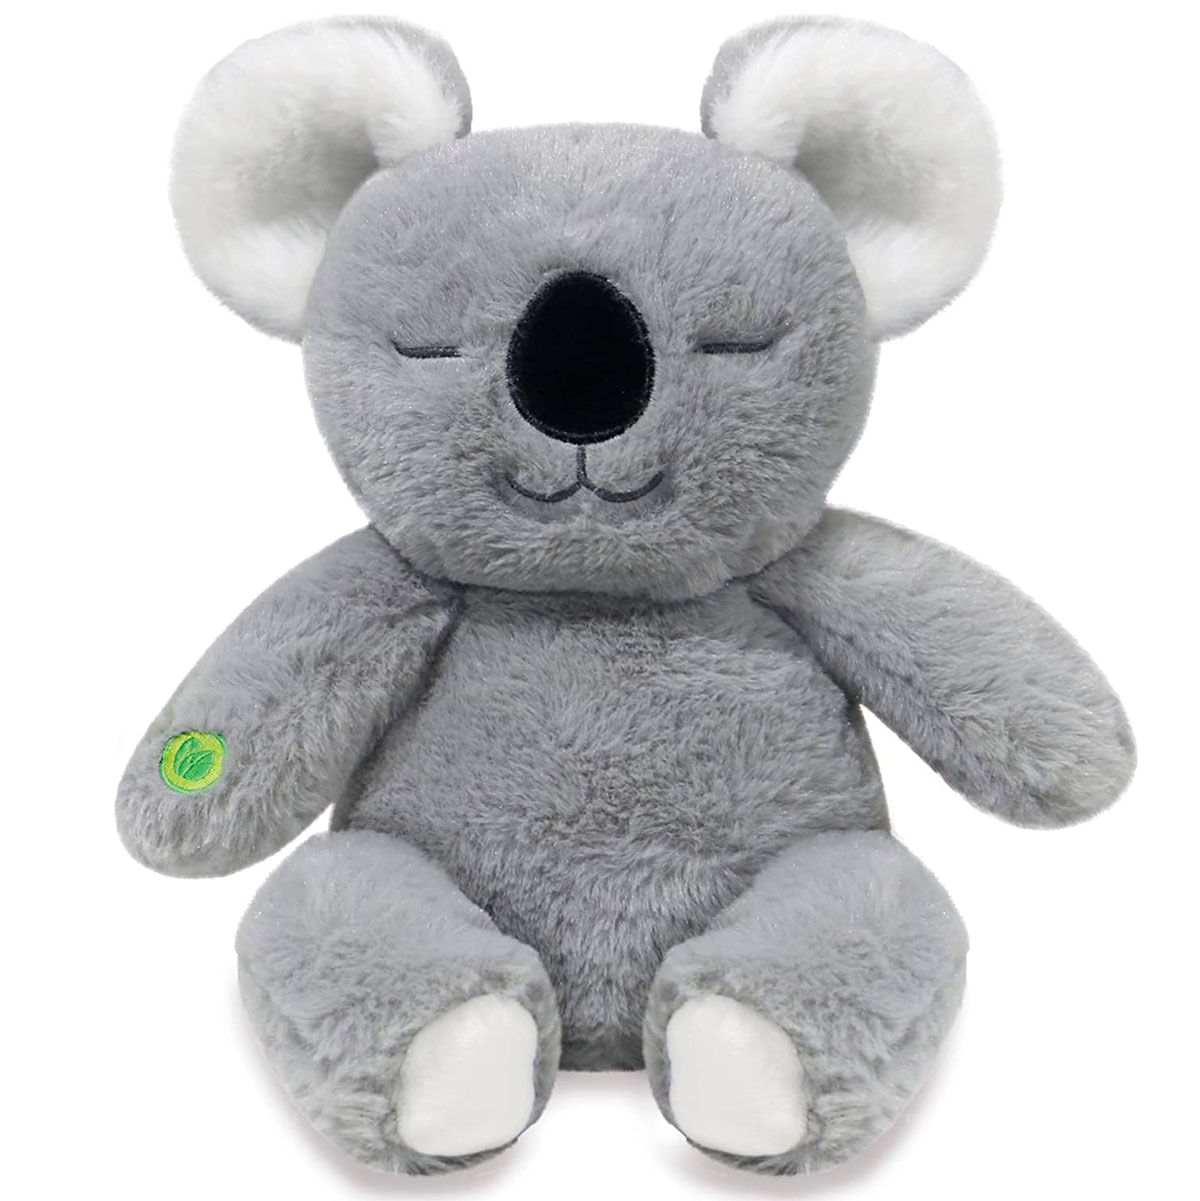 Peluche Koala Anima 15 Cm con Ofertas en Carrefour